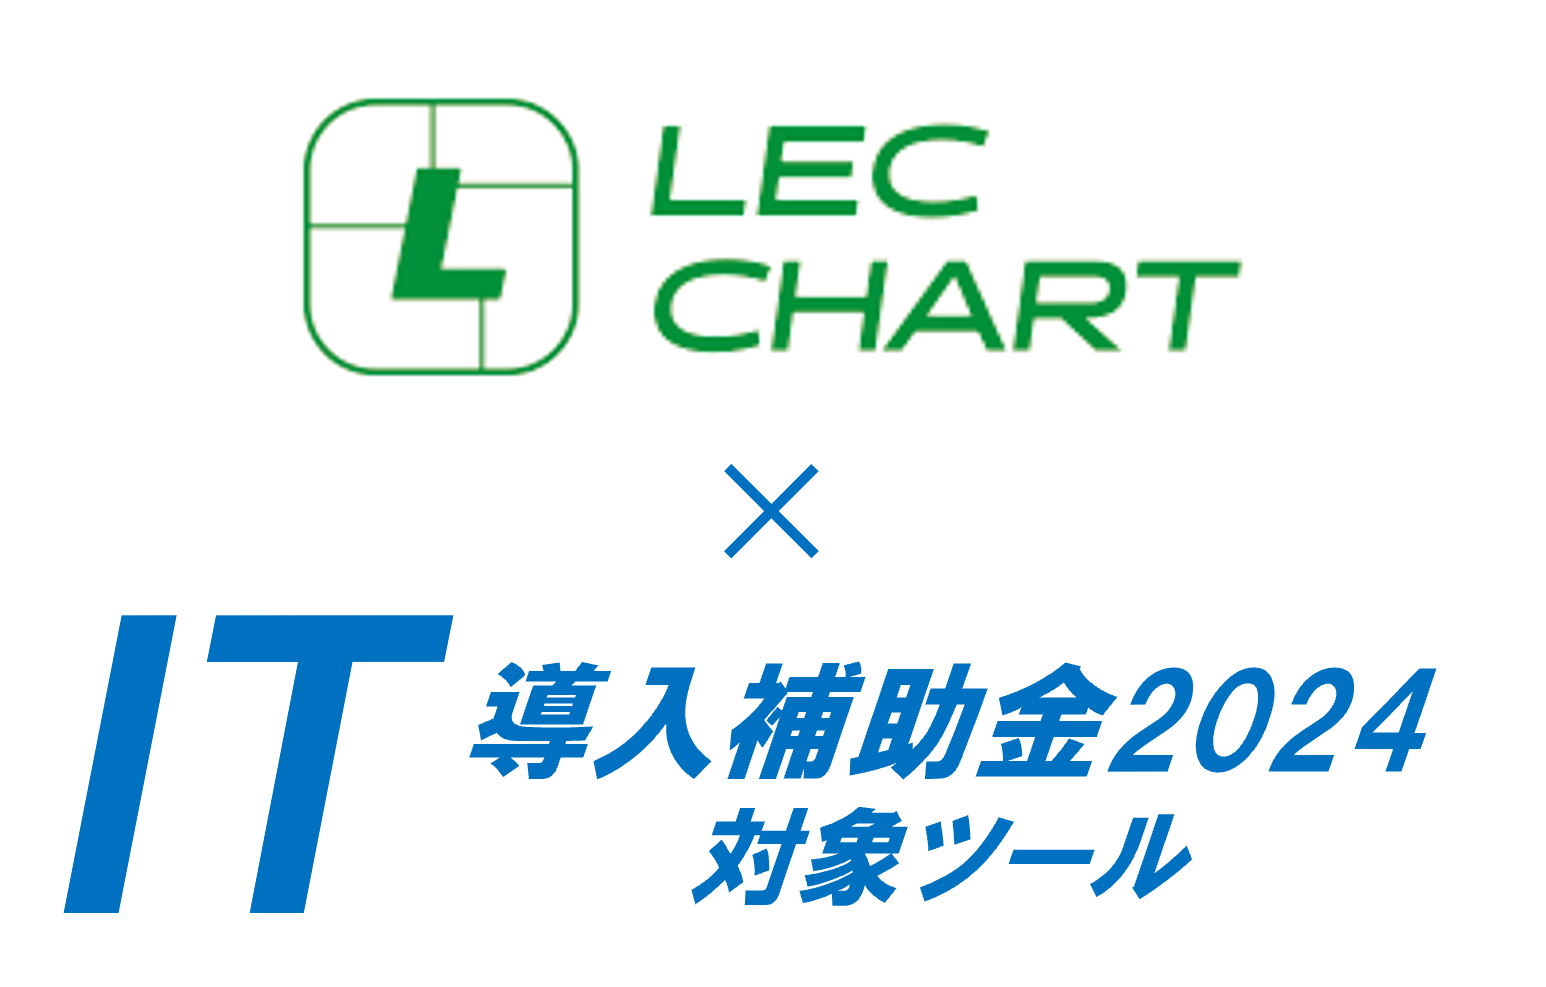 LEC CHART - IT導入補助金2024